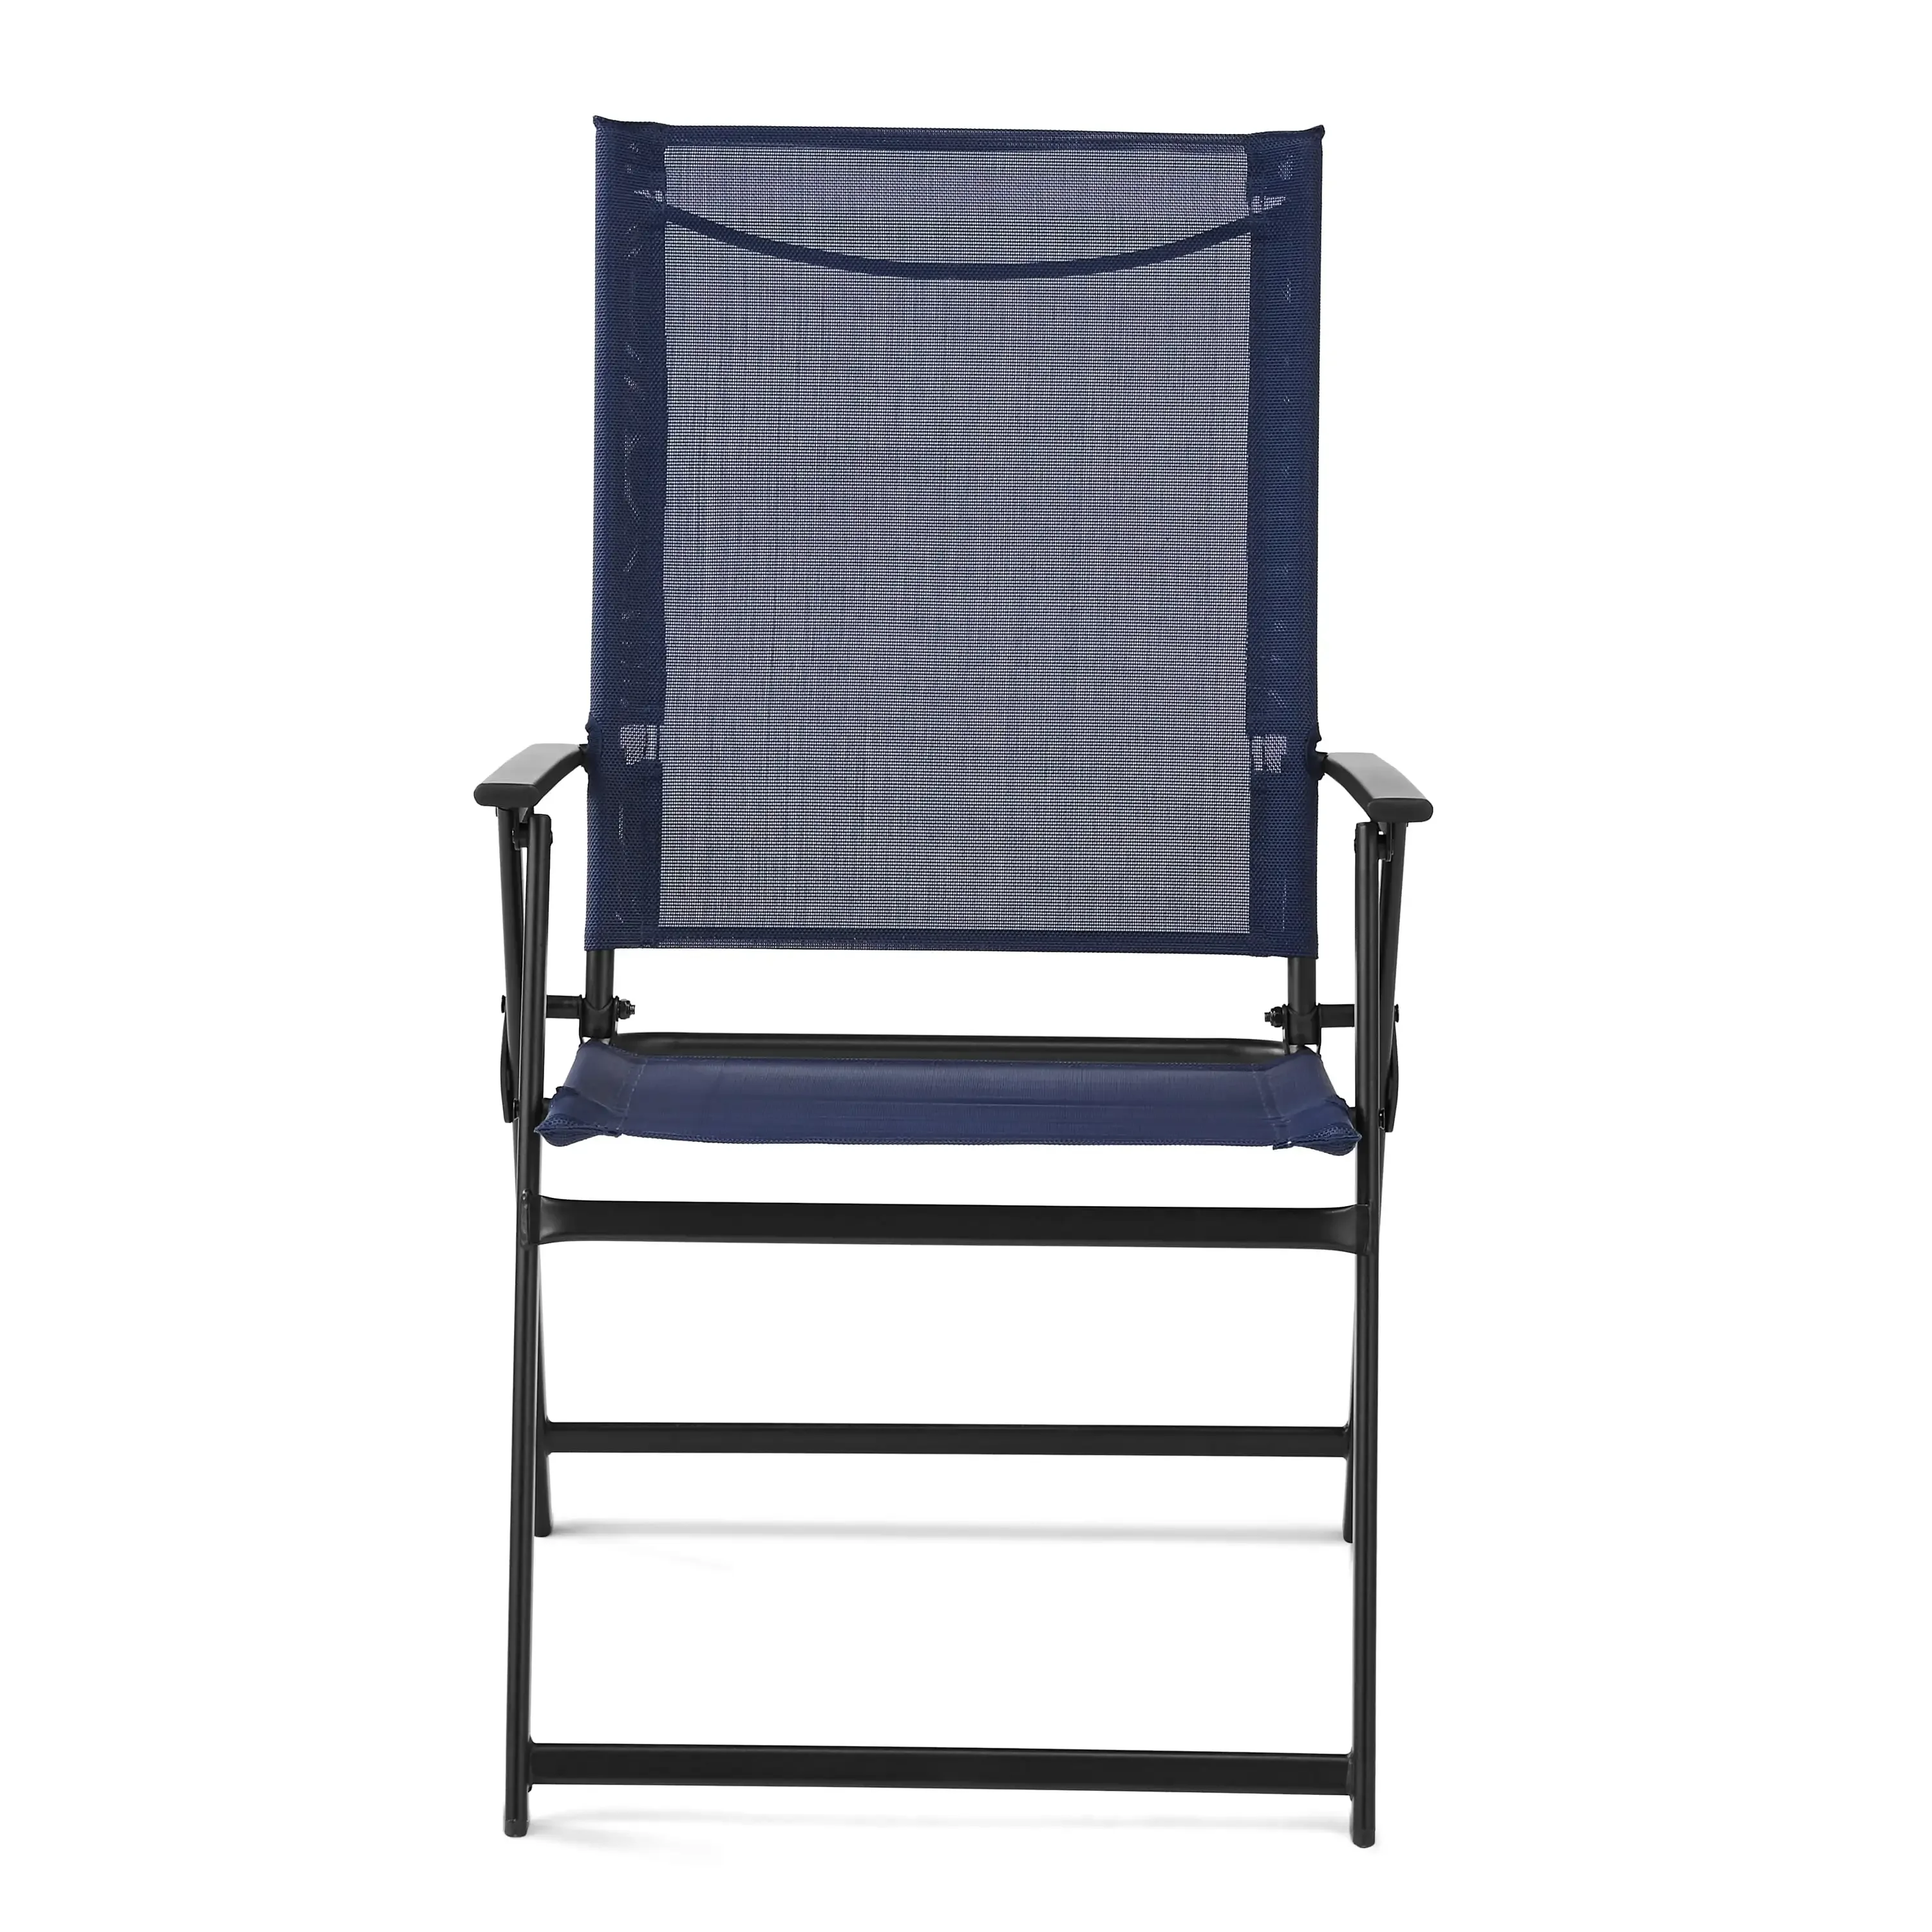 Опоры Greyson Square, набор из 2 складных стульев для патио, темно-синий